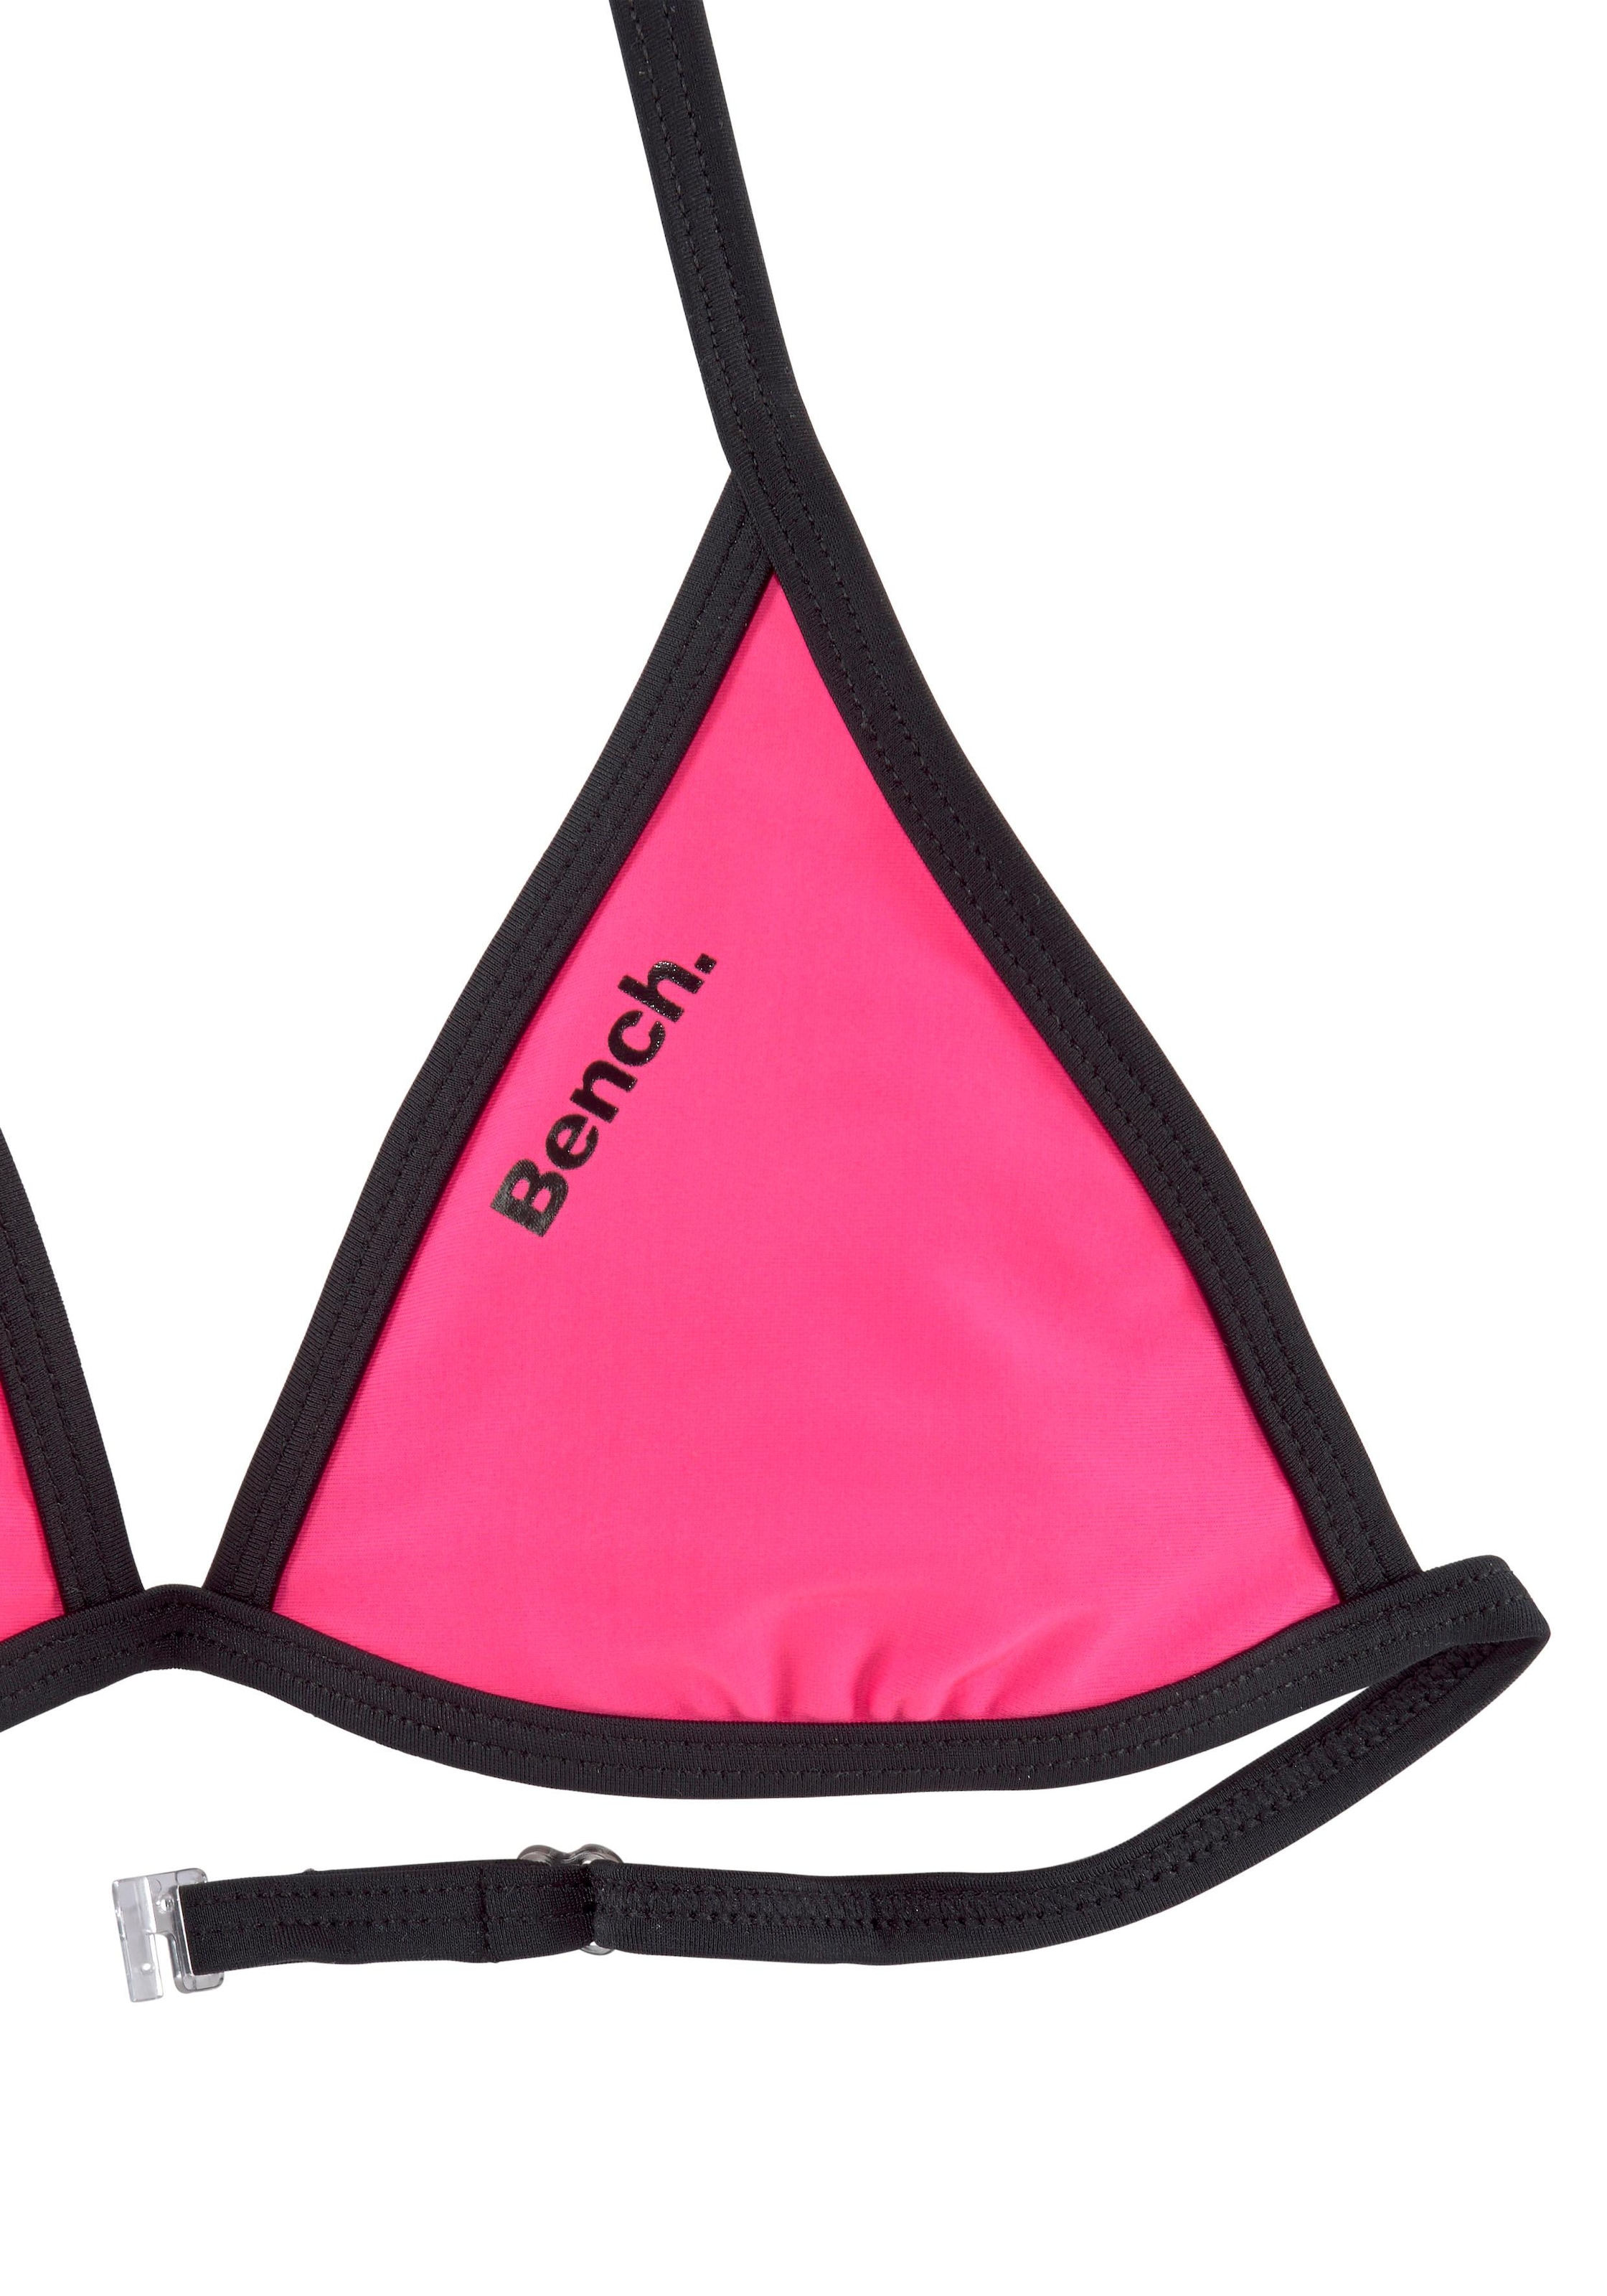 Bench. Triangel-Bikini, mit Logoprint an Top und Hose bei